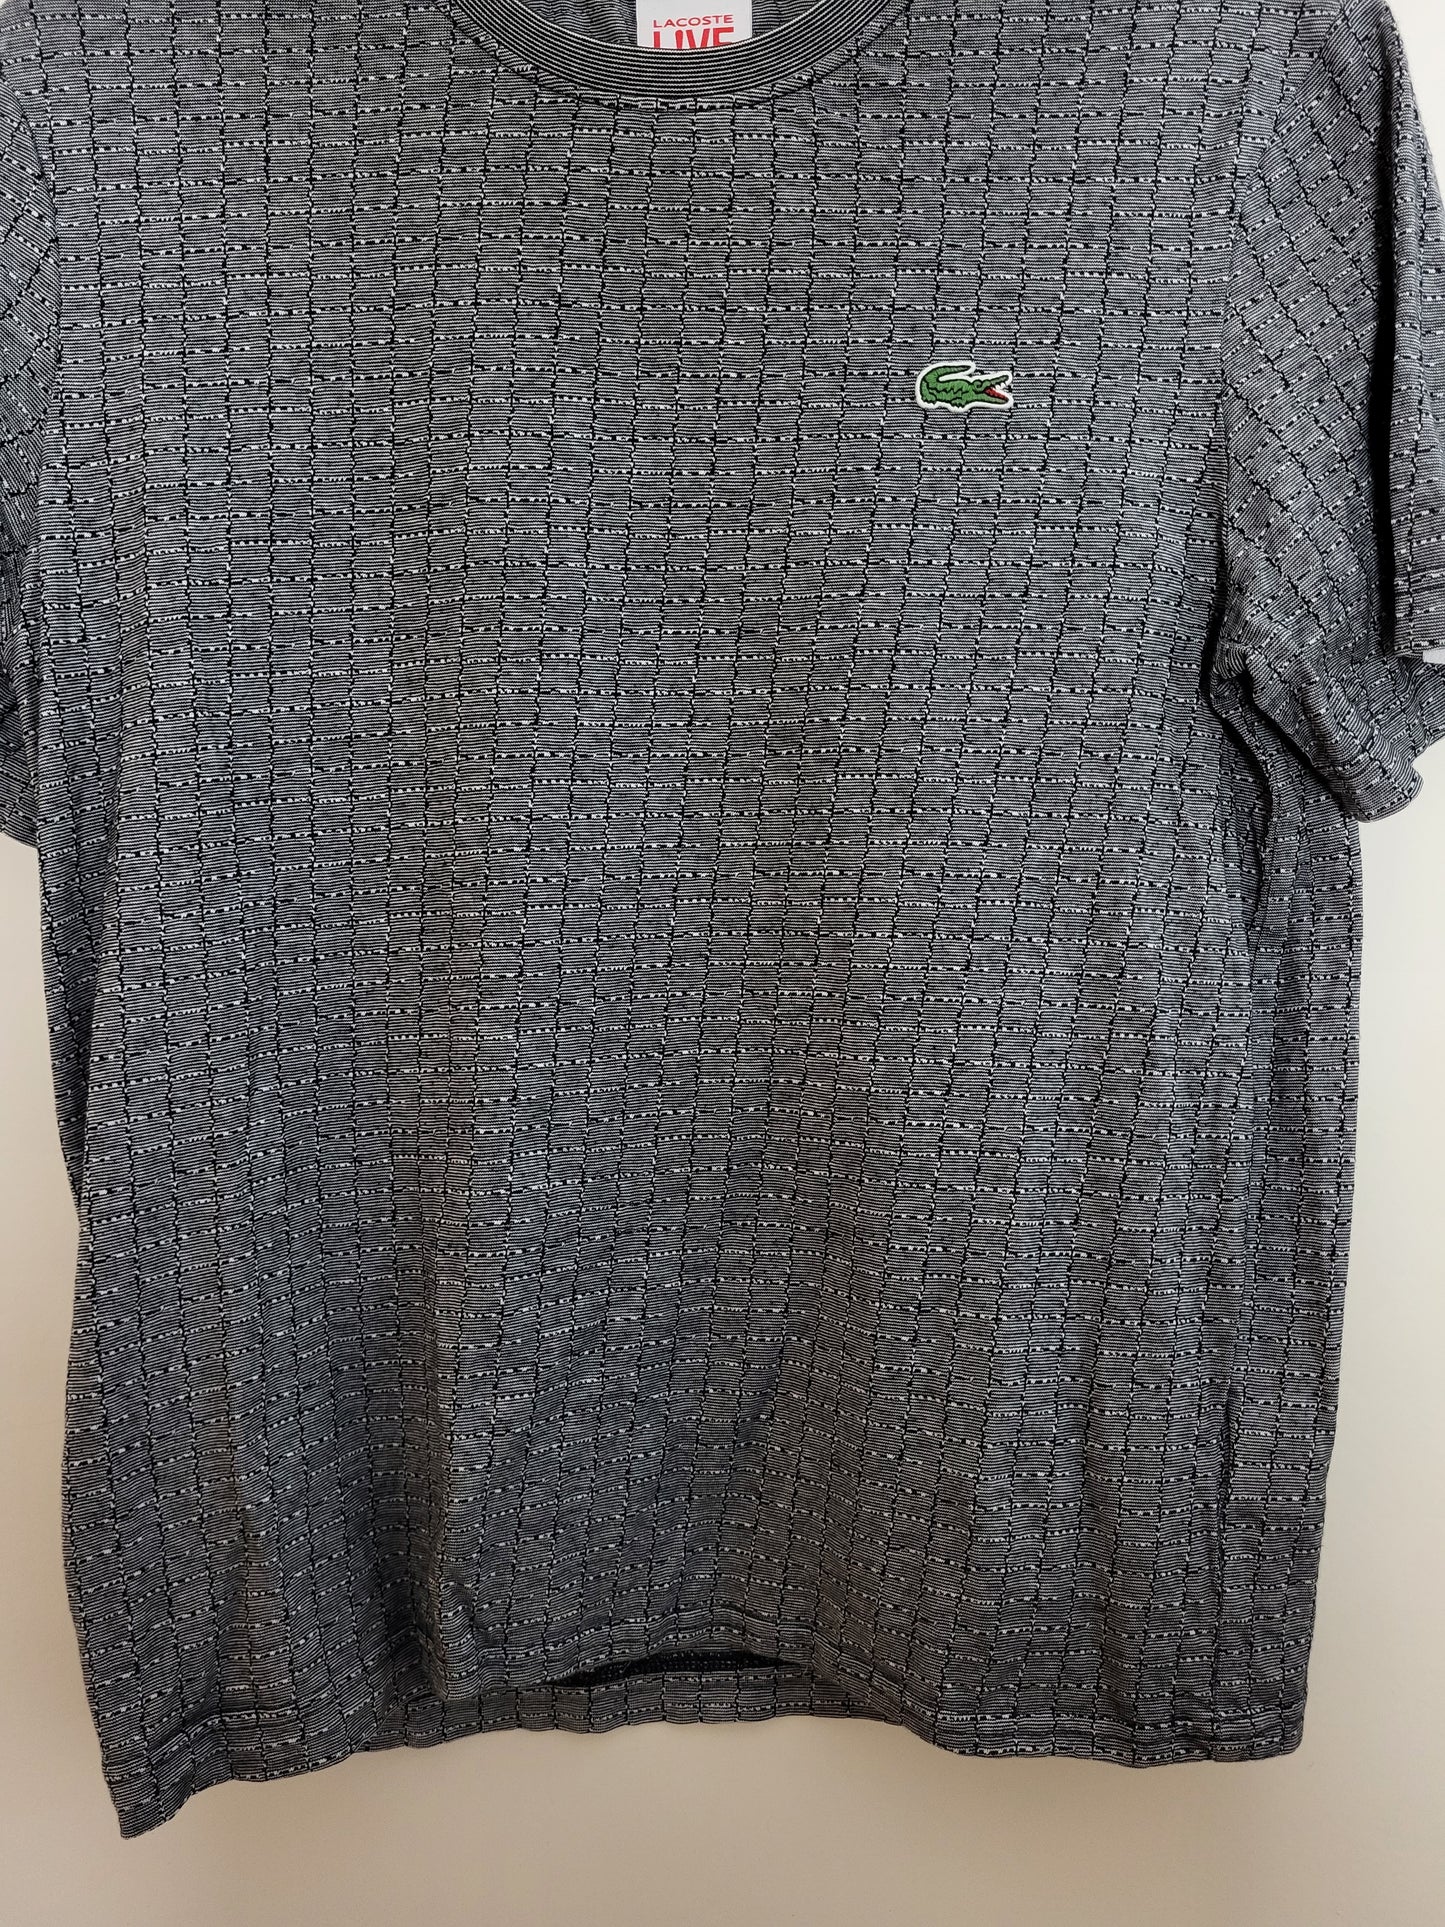 LACOSTE - Shirt - Muster - Grau - Damen - XS (Neuwertig)